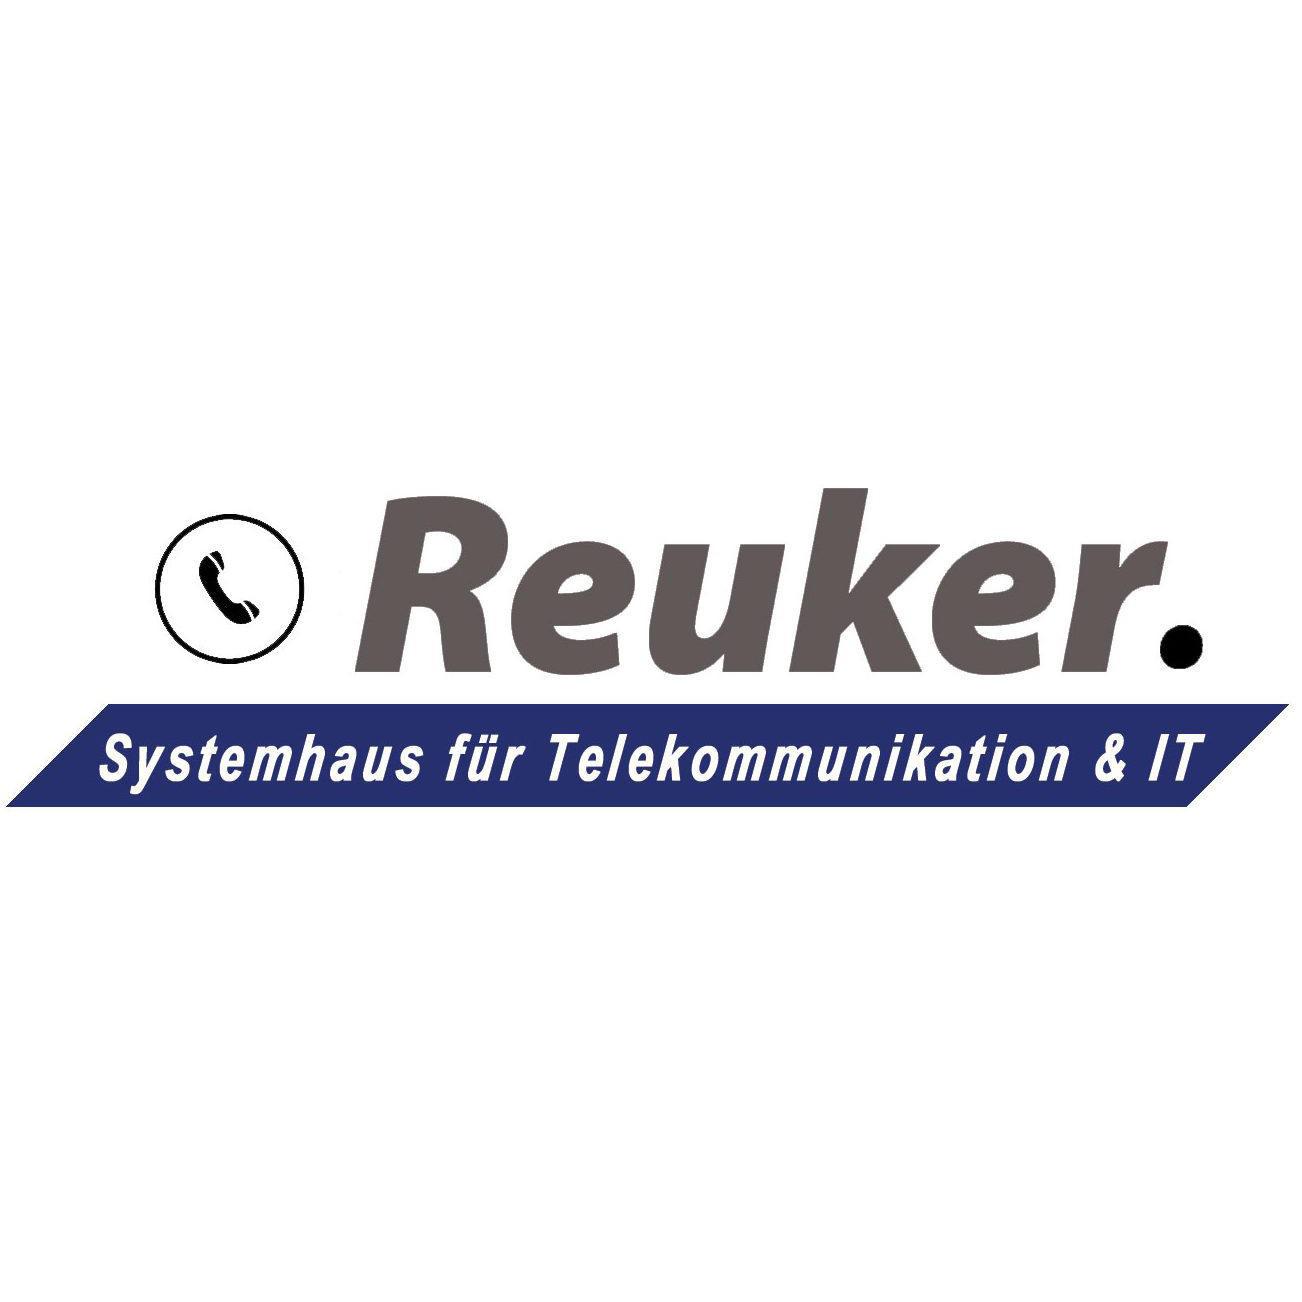 Reuker Systemhaus für Telekommunikation und IT Logo